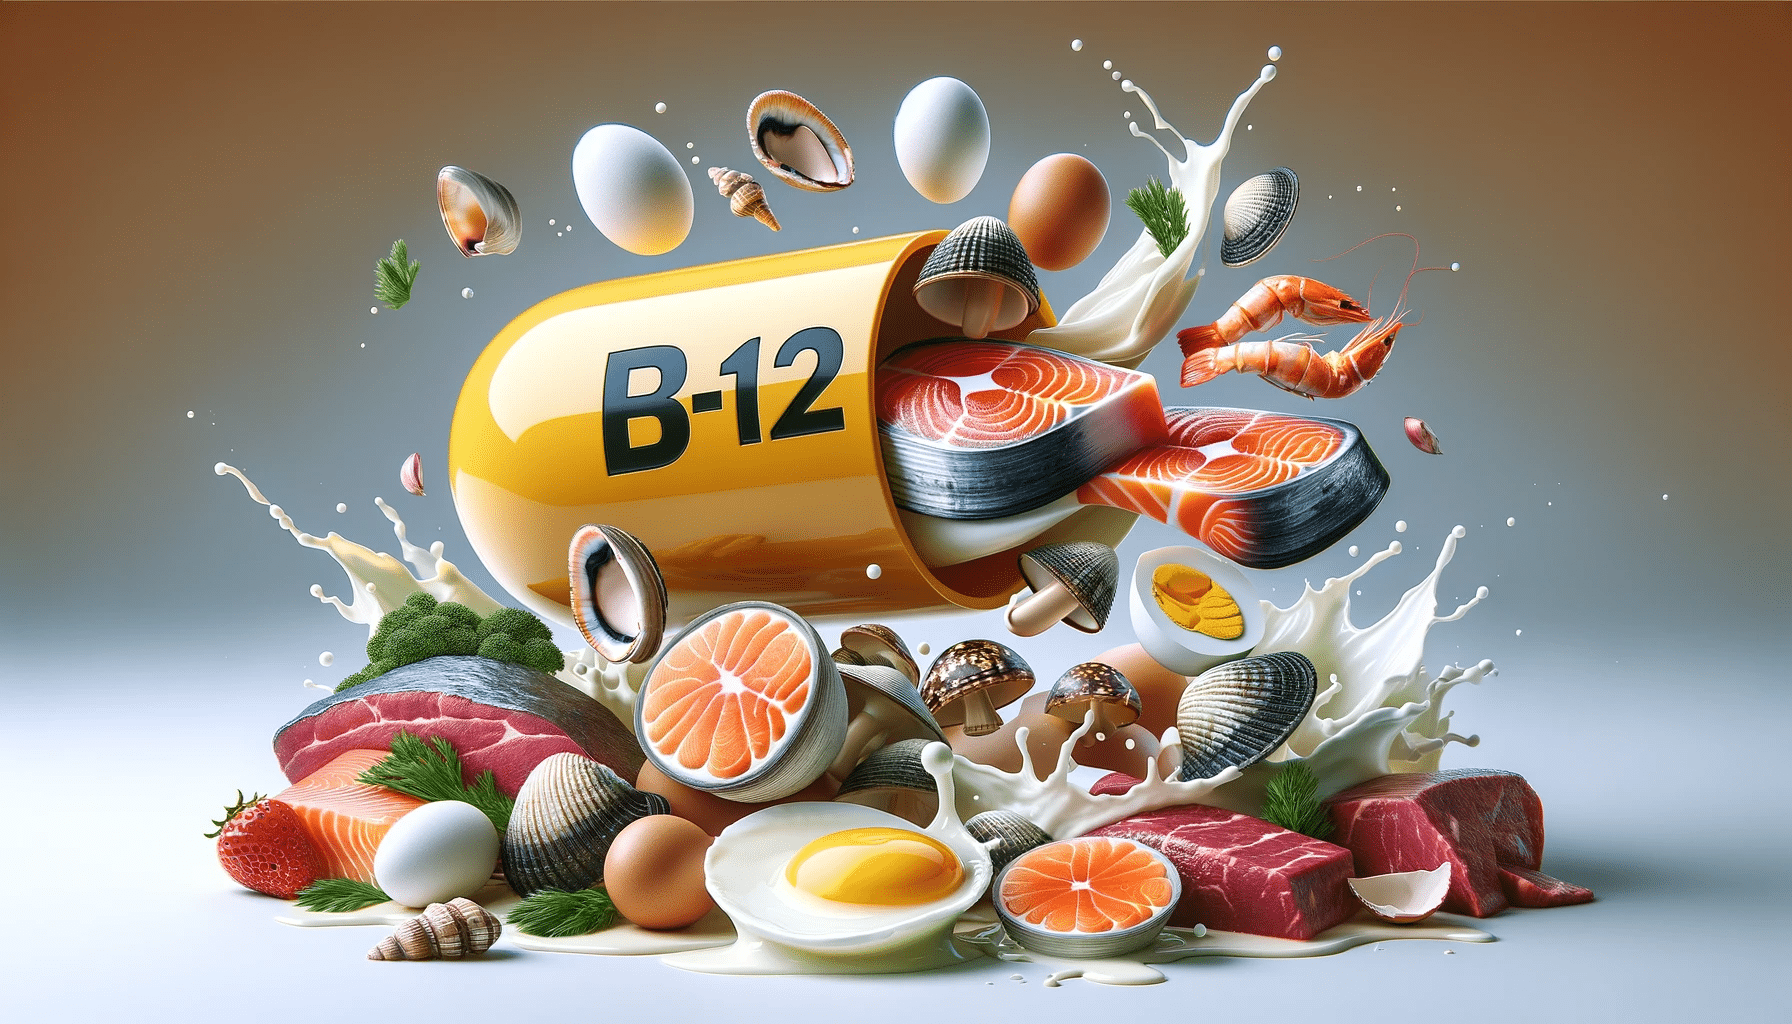 capsula de vitamina B12, contendo alimentos ricos em vitamina b12